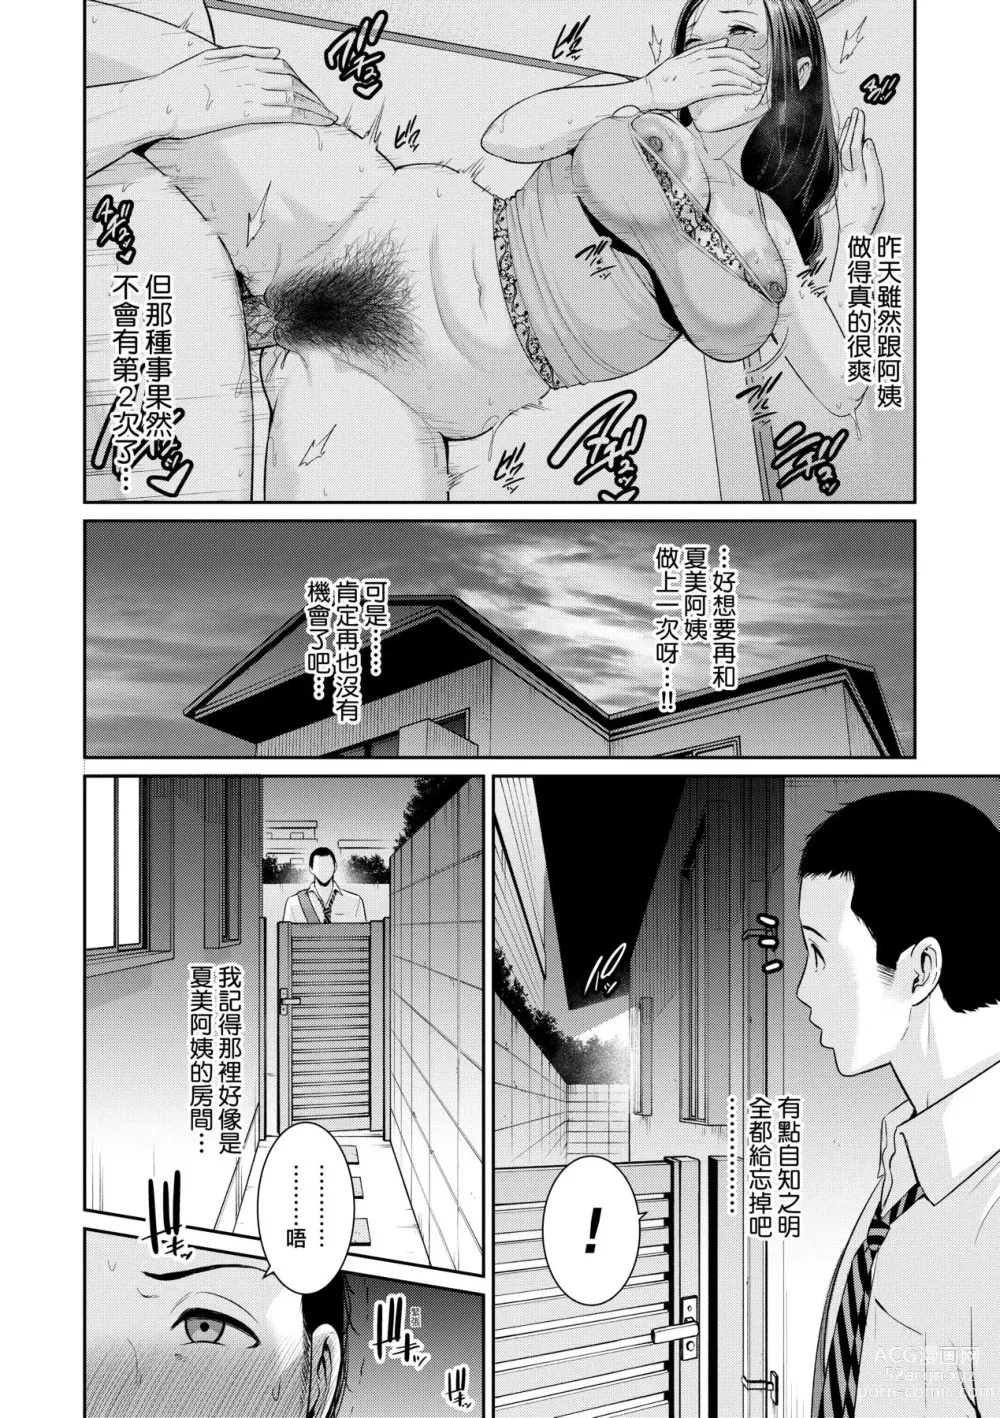 Page 31 of manga 朋友的馬麻 (decensored)